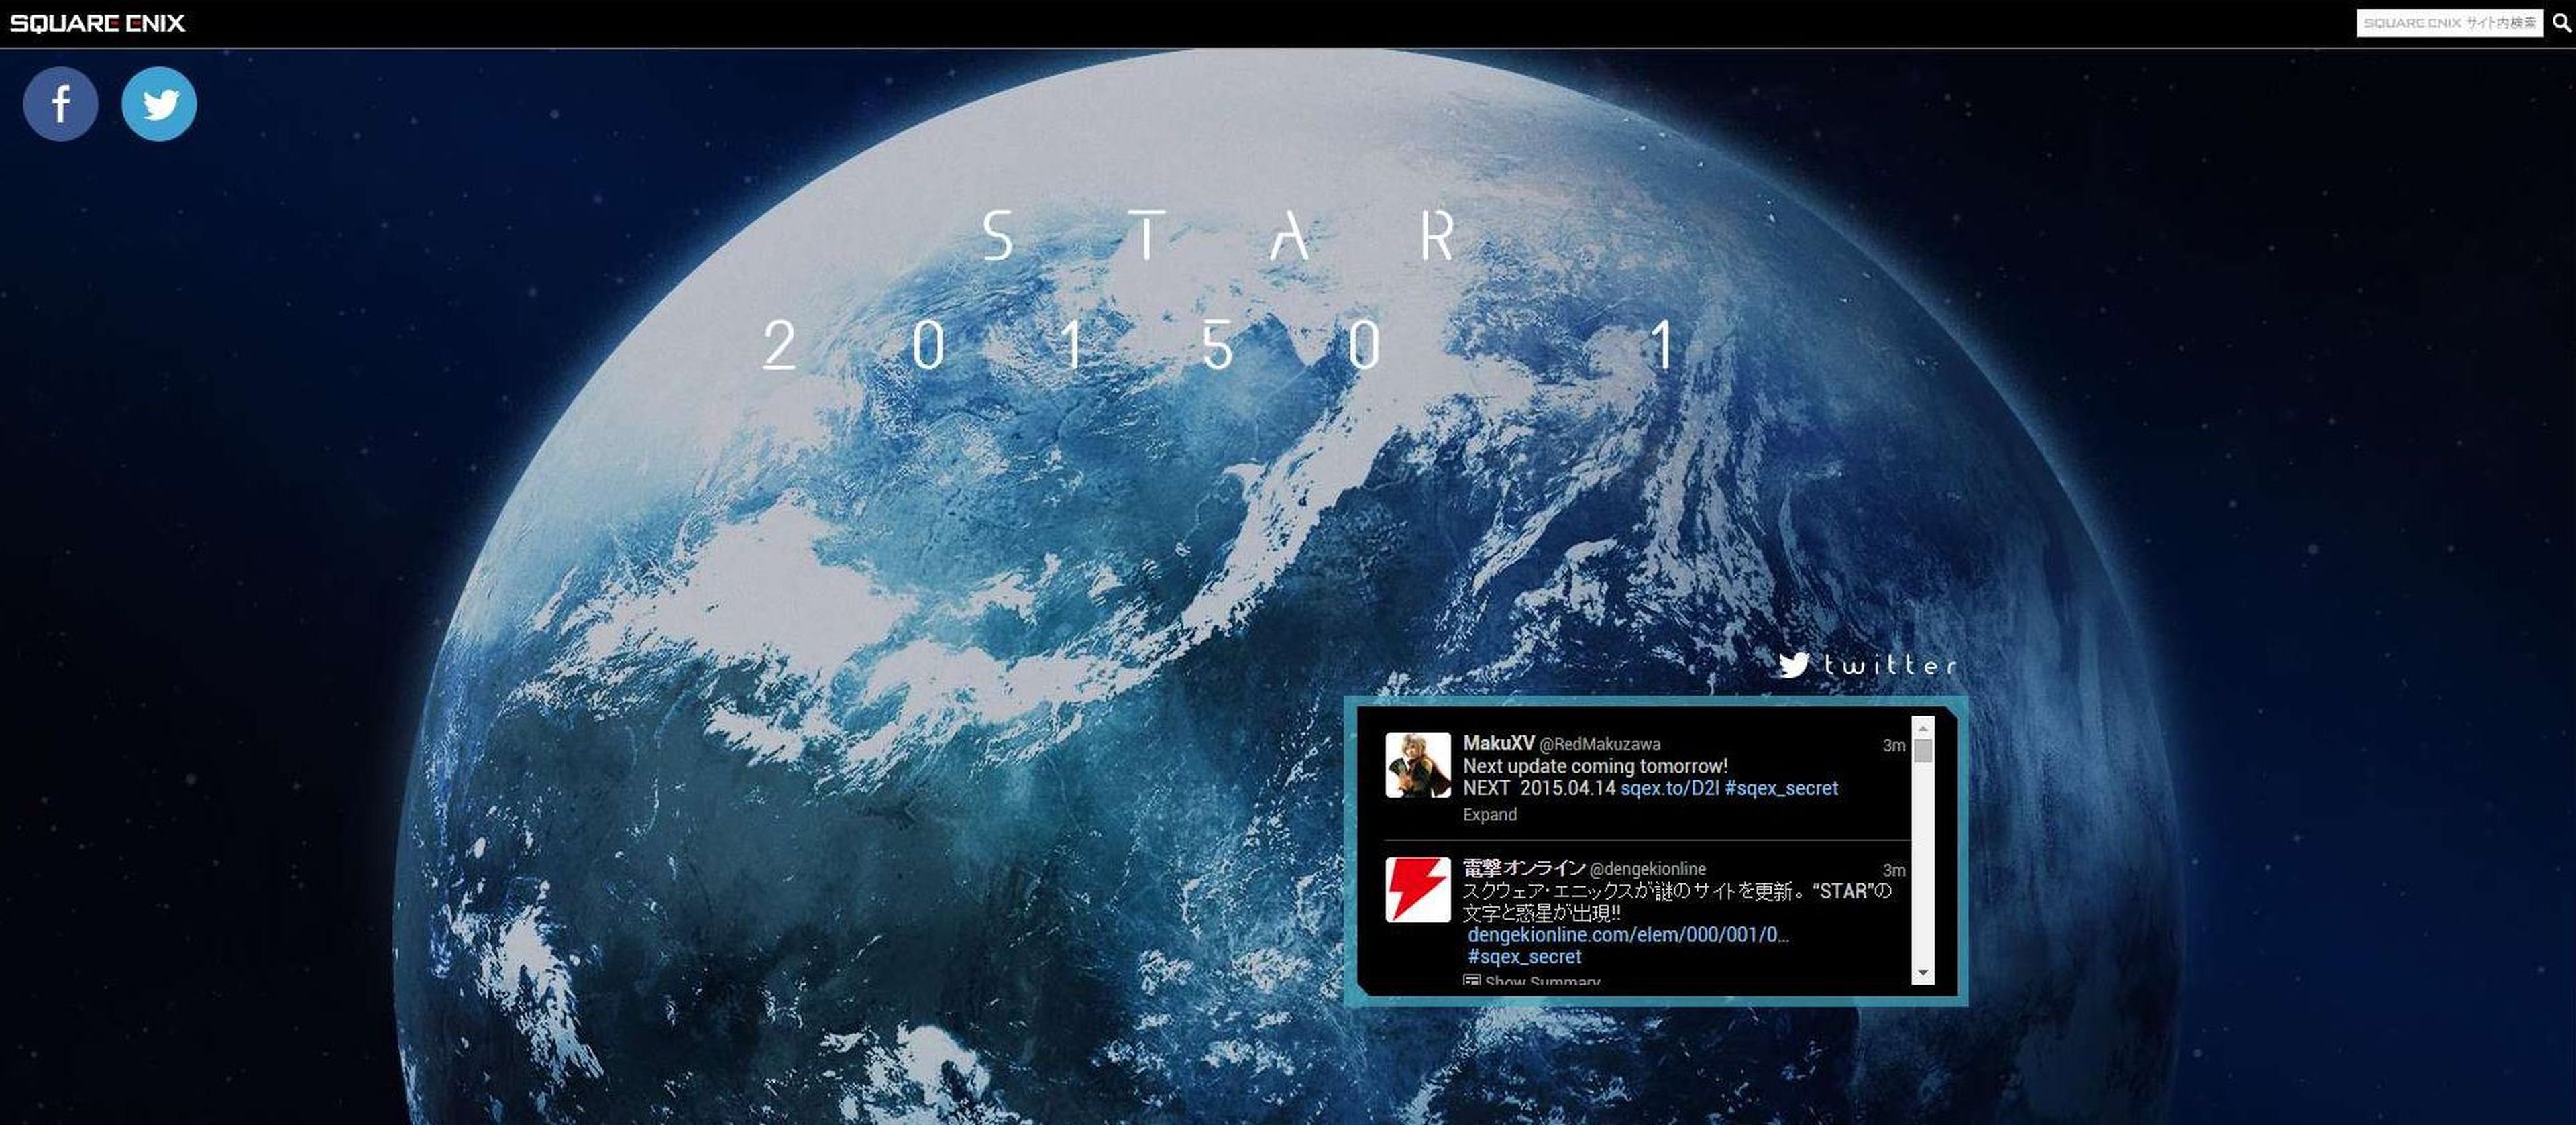 Star Ocean podría ser lo nuevo de Square Enix